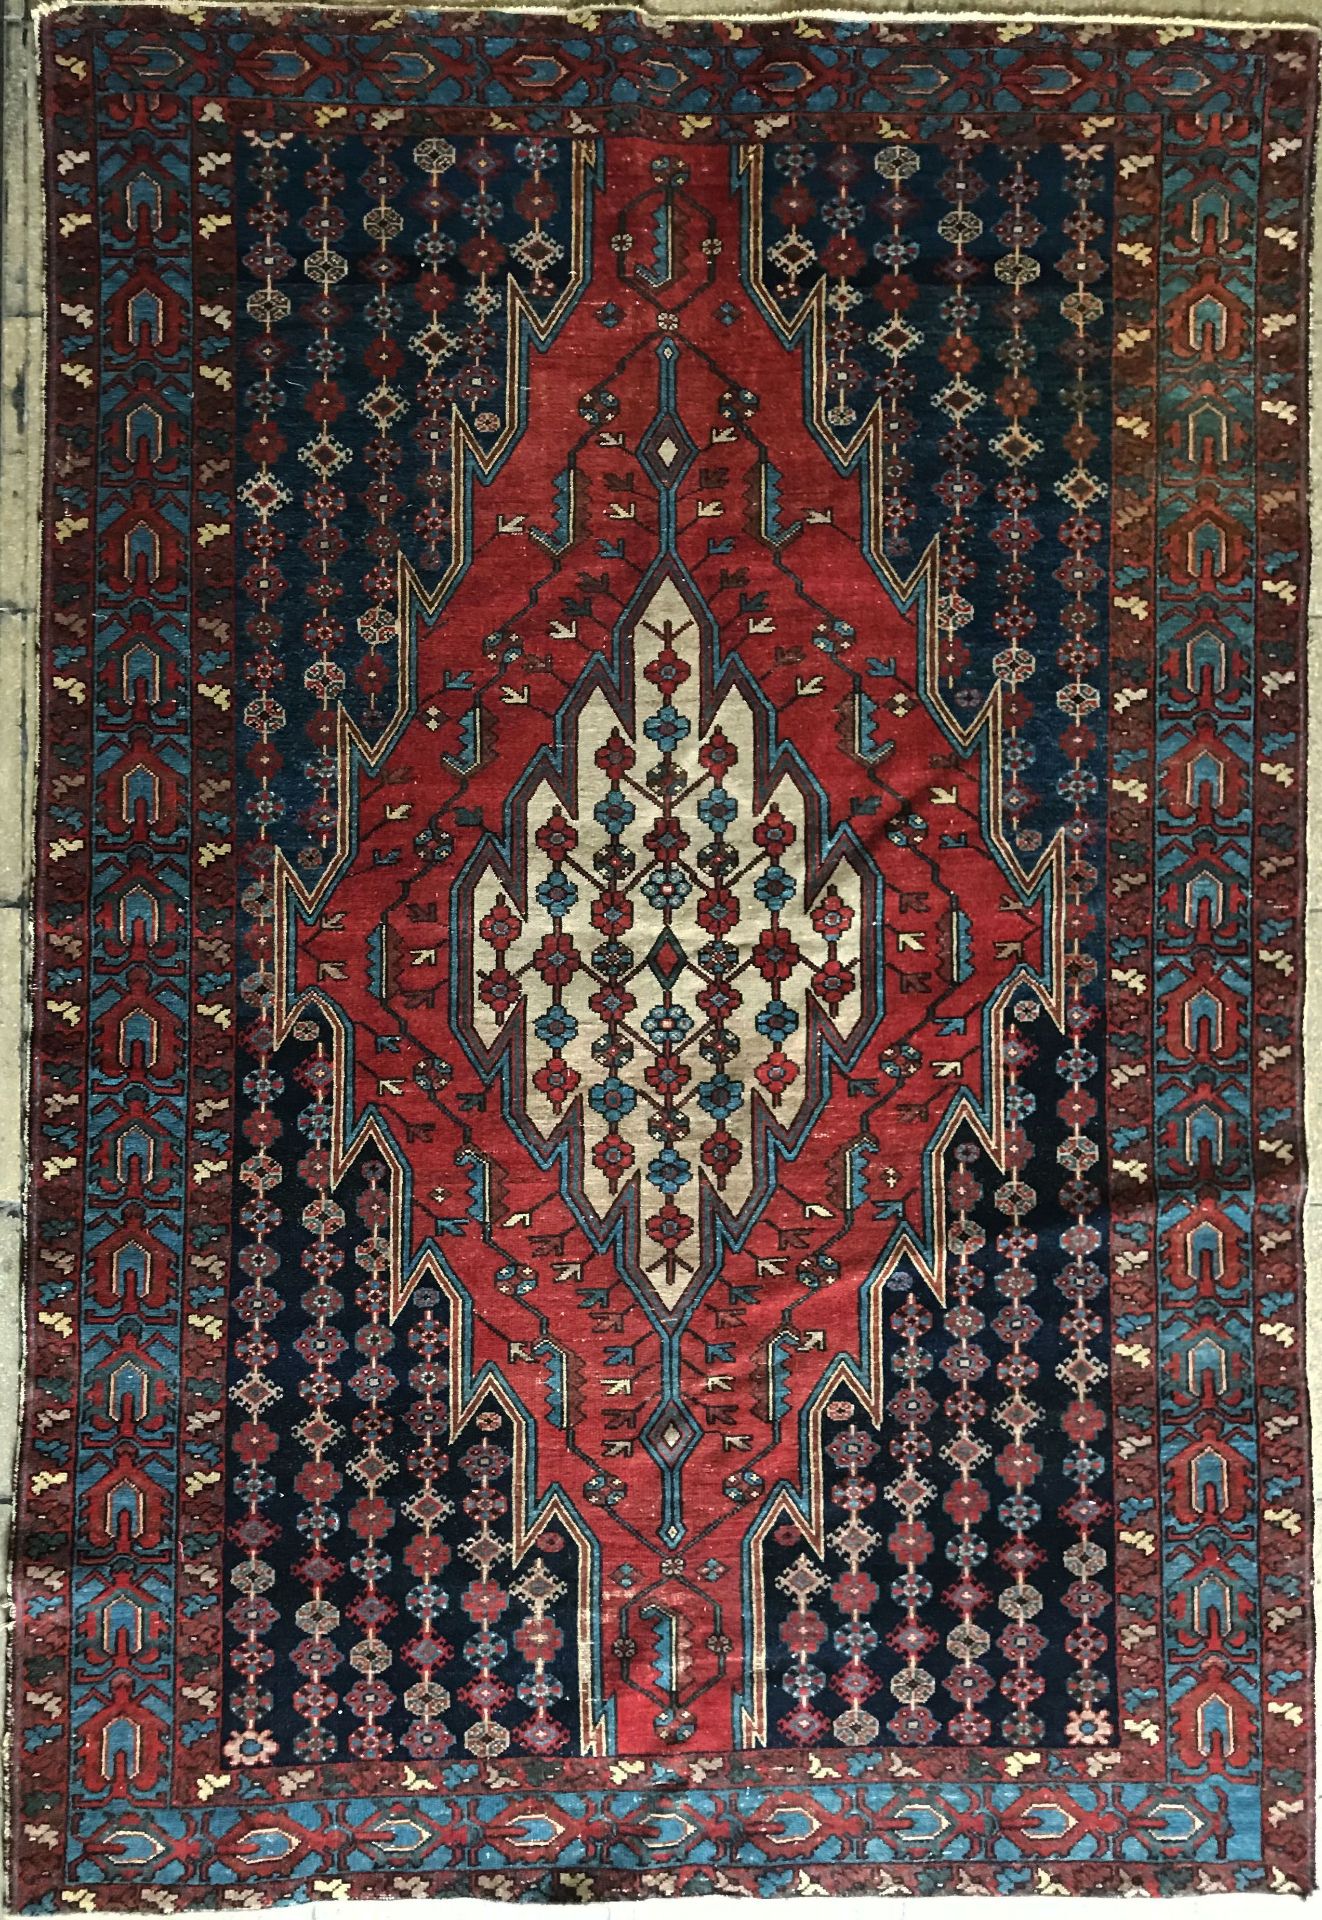 3 Orientteppiche, u. a. Kashmir, Indien, ca. 70 Jahre alt, 225 x 140 cm; rotgrundiger Art Läufer, - Image 11 of 12